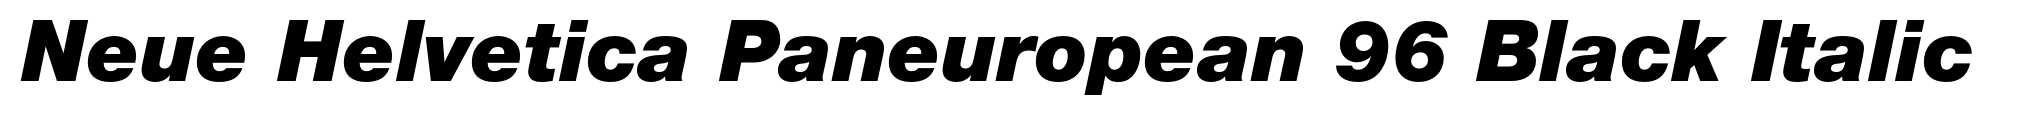 Neue Helvetica Paneuropean 96 Black Italic image